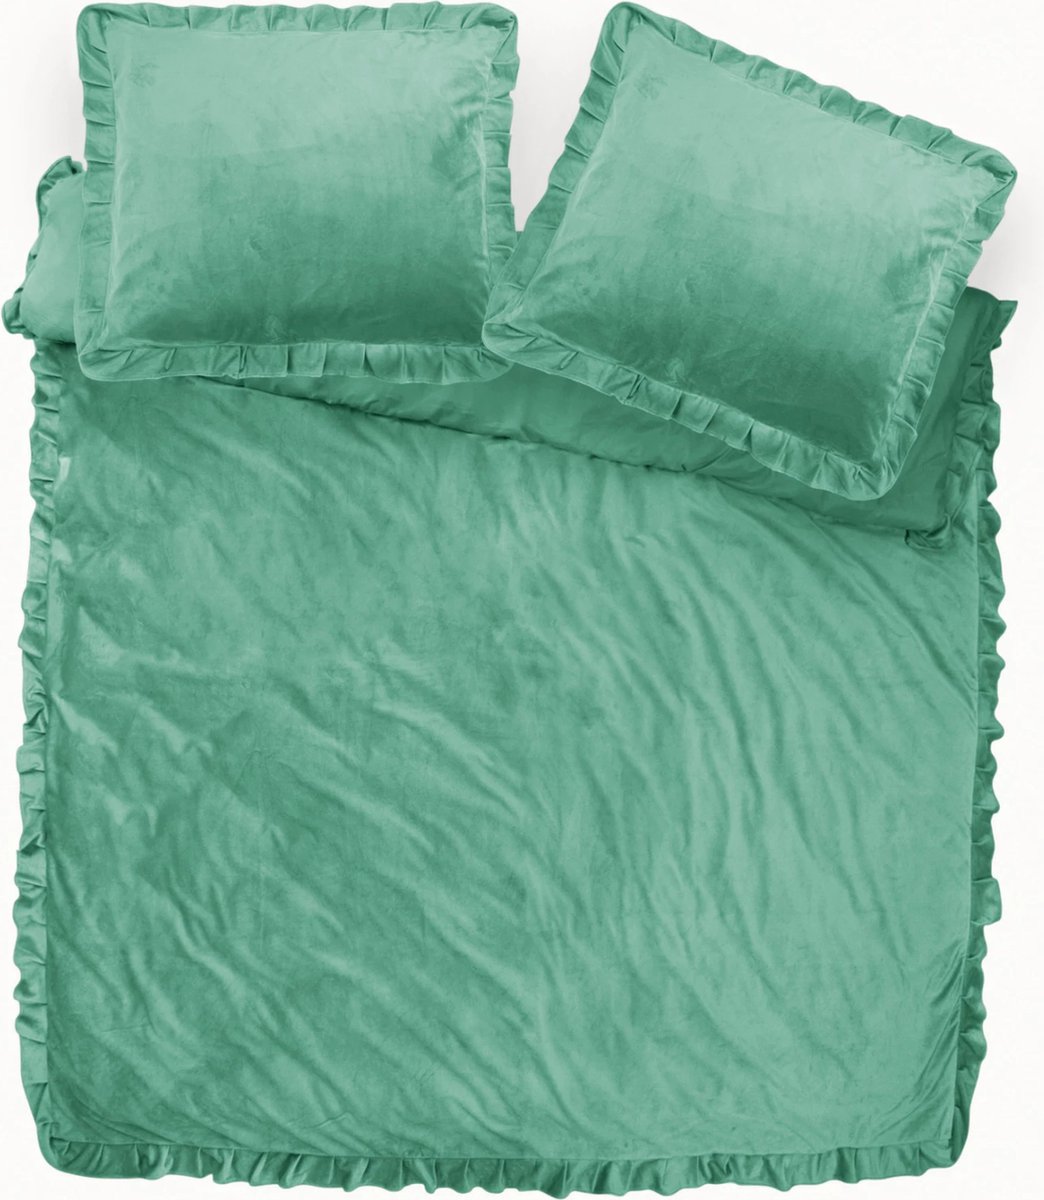 Fluweel zachte velvet dekbedovertrek ruches groen - 240x200/220 (lits-jumeaux) - super fijn slapen - stijlvolle uitstraling - luxe kwaliteit - met handige drukknopen